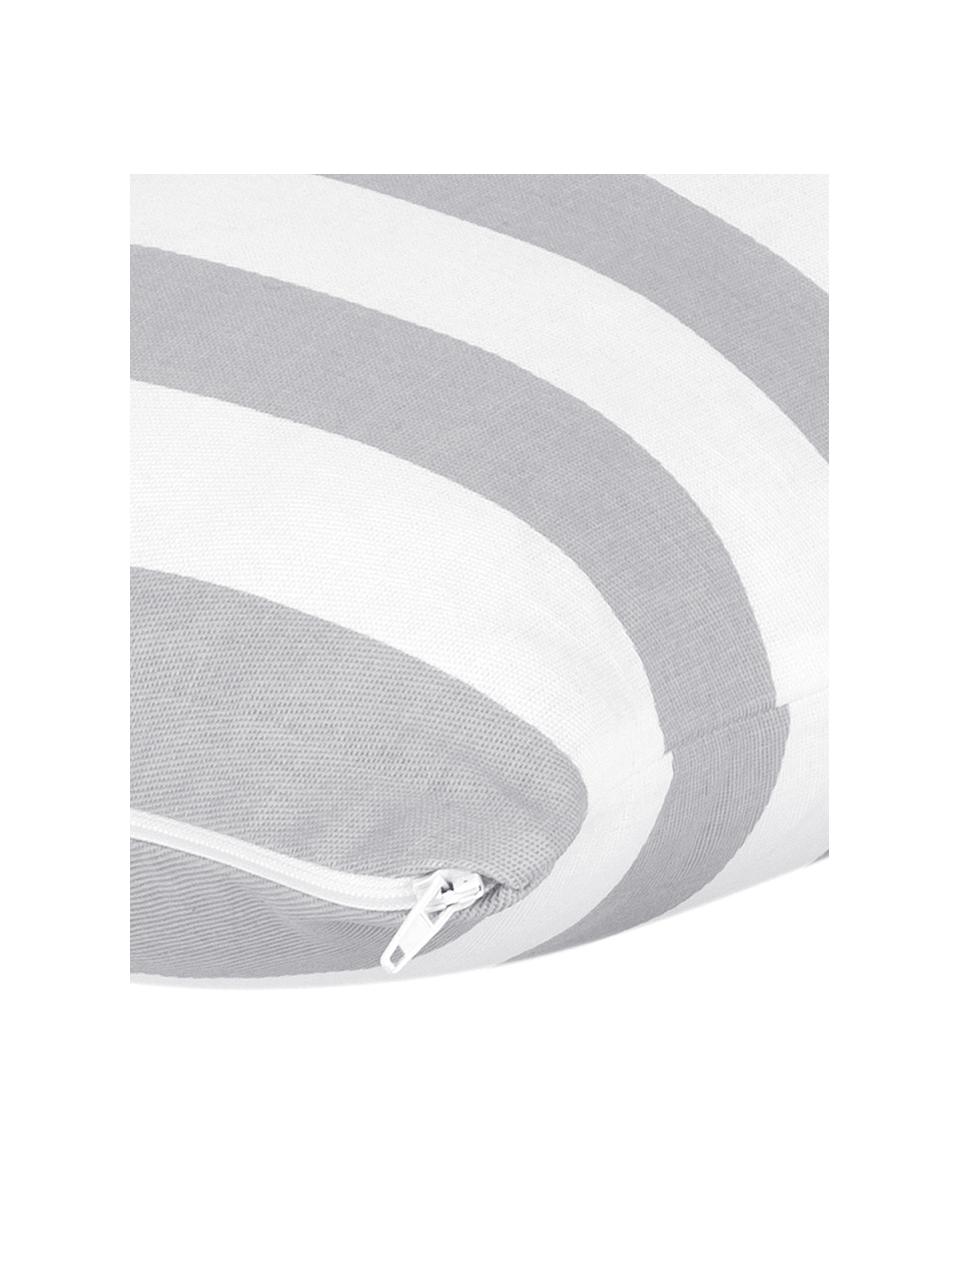 Gestreifte Kissenhülle Timon in Grau/Weiß, 100% Baumwolle, Hellgrau, Weiß, B 50 x L 50 cm